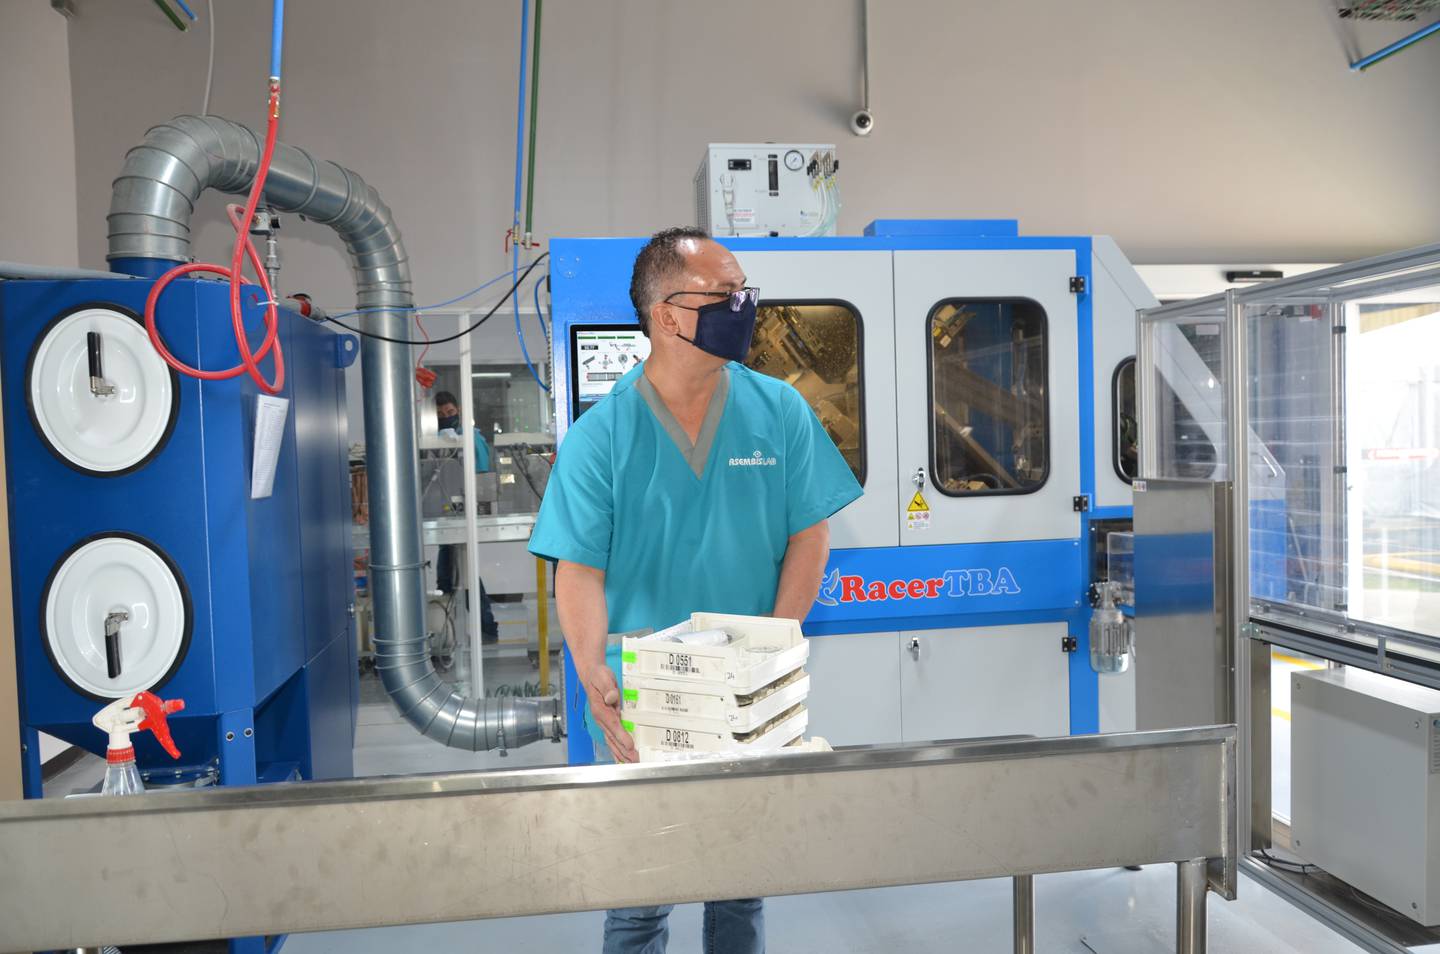 El nuevo laboratorio de Asembis ubicado en Purral, de Guadalupe, permitirá la fabricación digital de lentes de última tecnología y un sistema automatizado de producción. Foto: Cortesía de Asembis.